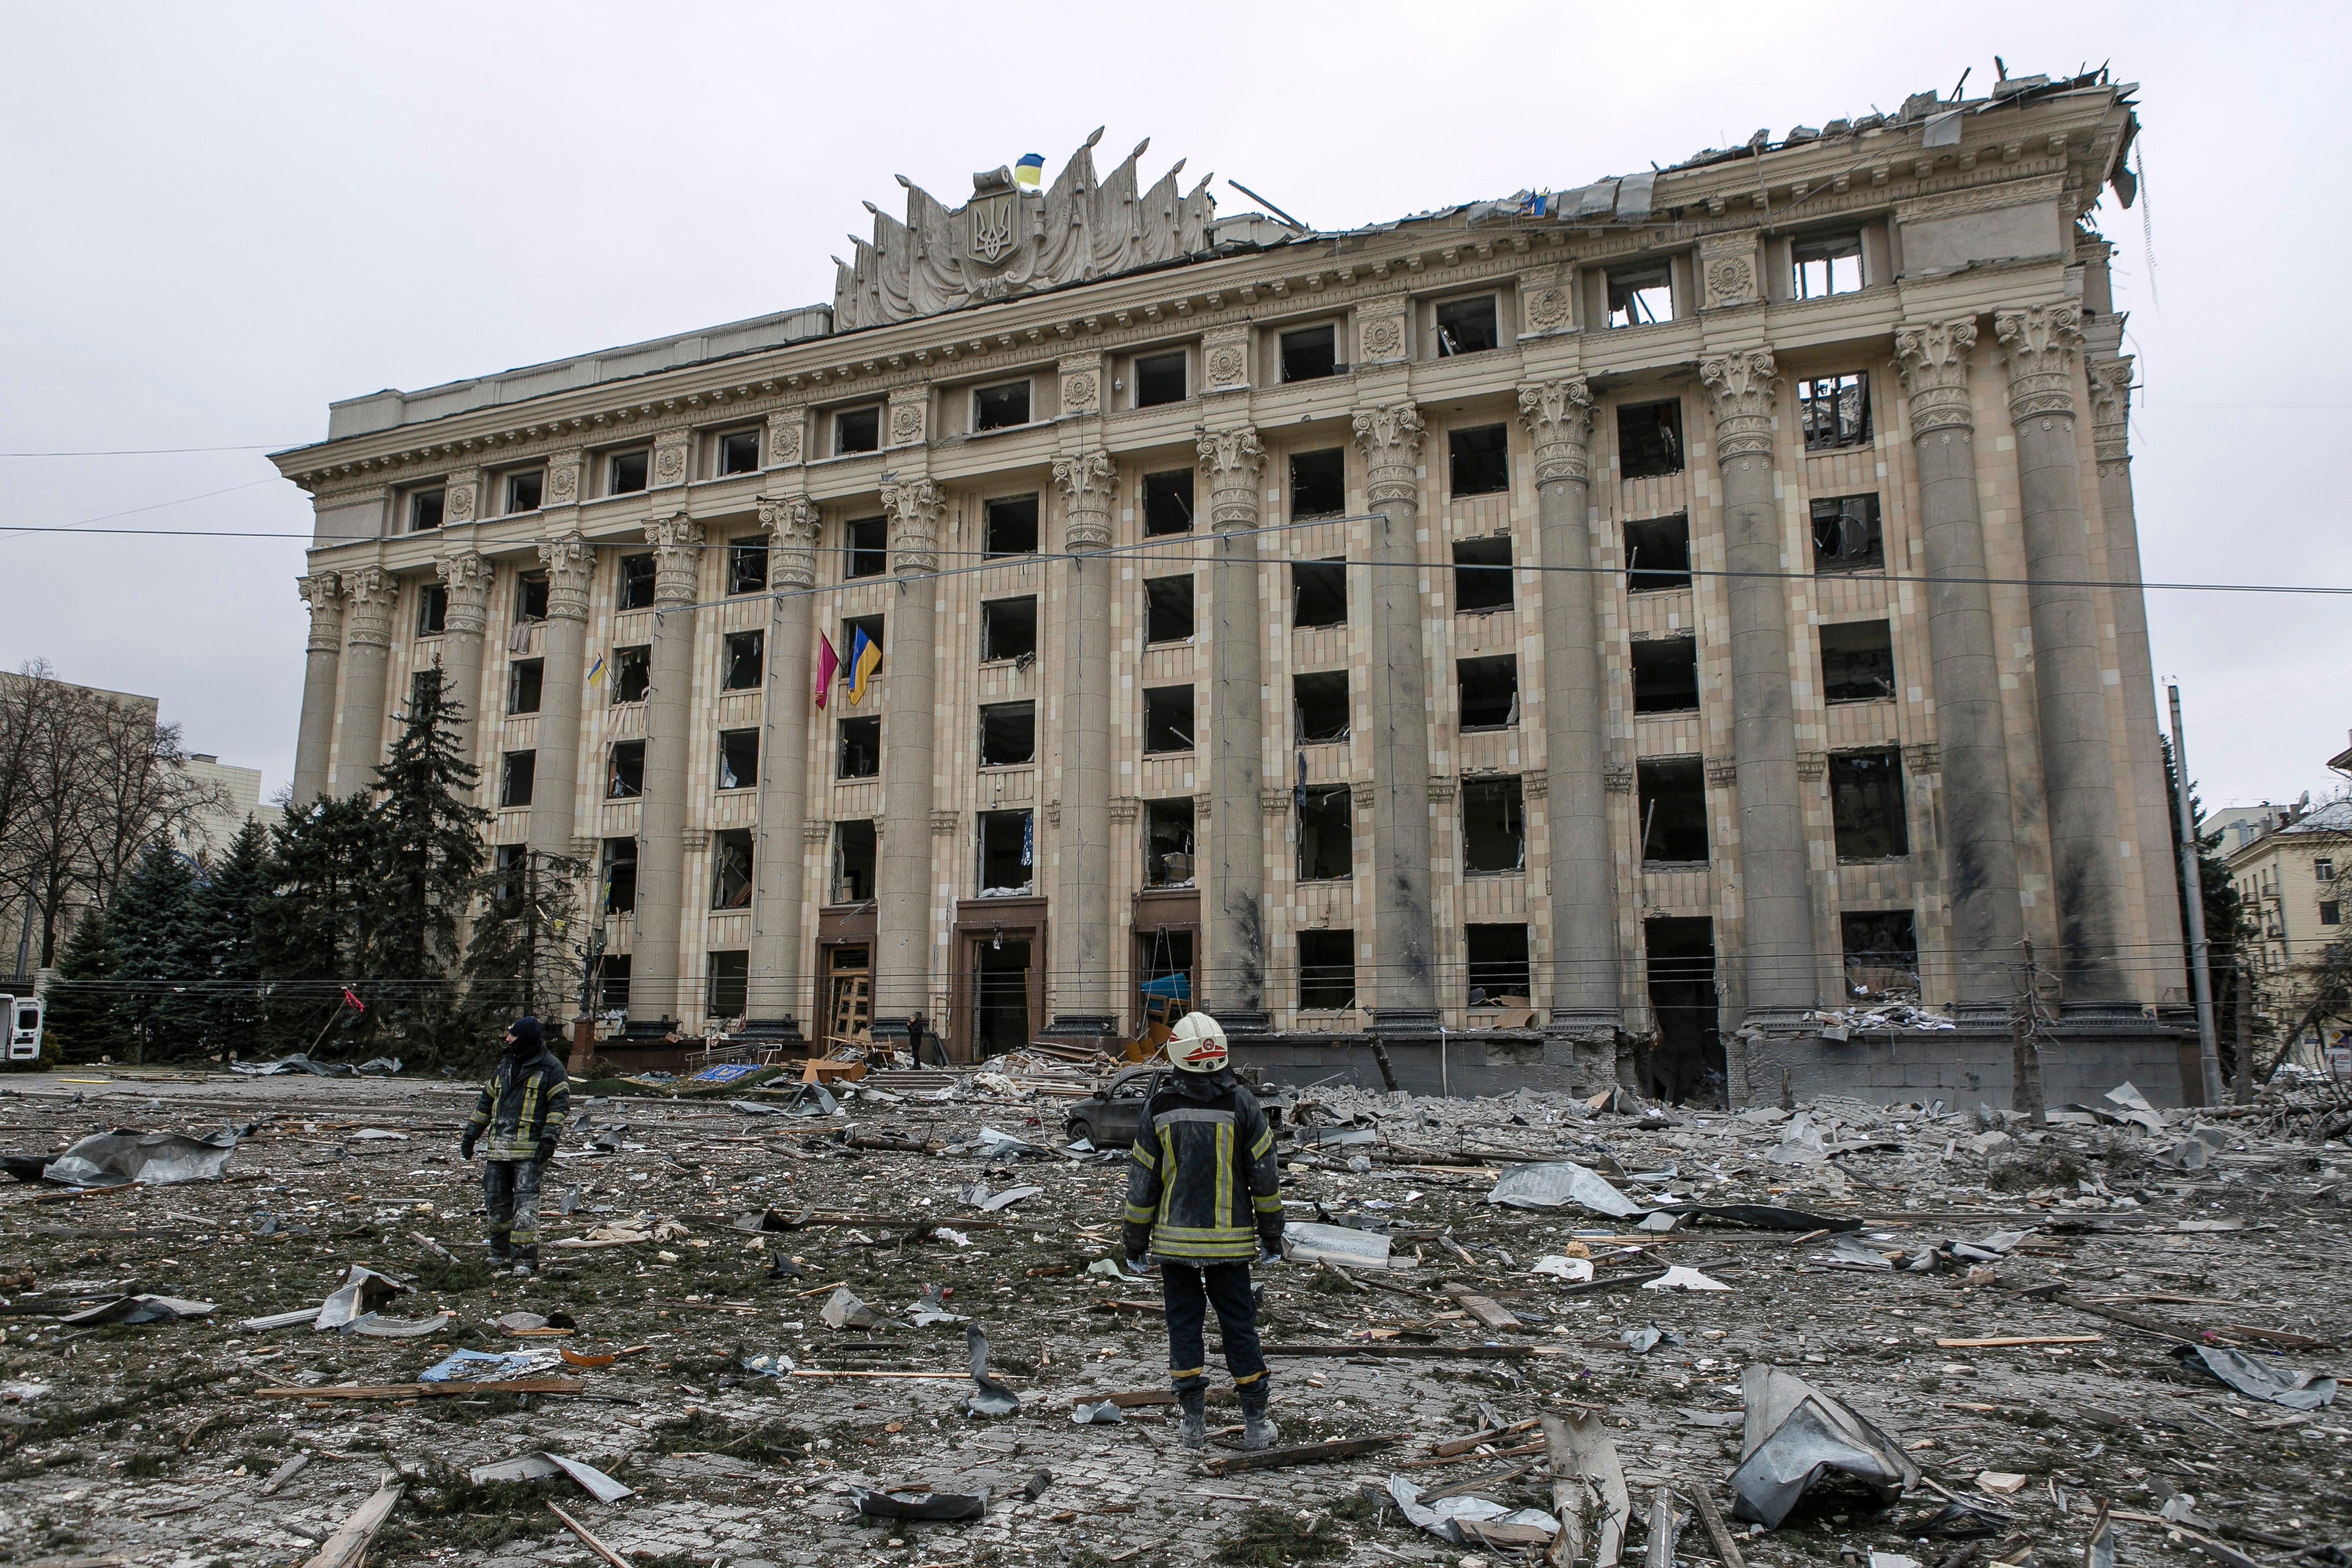 Un miembro del Servicio de Emergencia Ucraniano observa el edificio del ayuntamiento en la plaza central tras un bombardeo en Kharkiv, Ucrania, el martes 1 de marzo, 2022